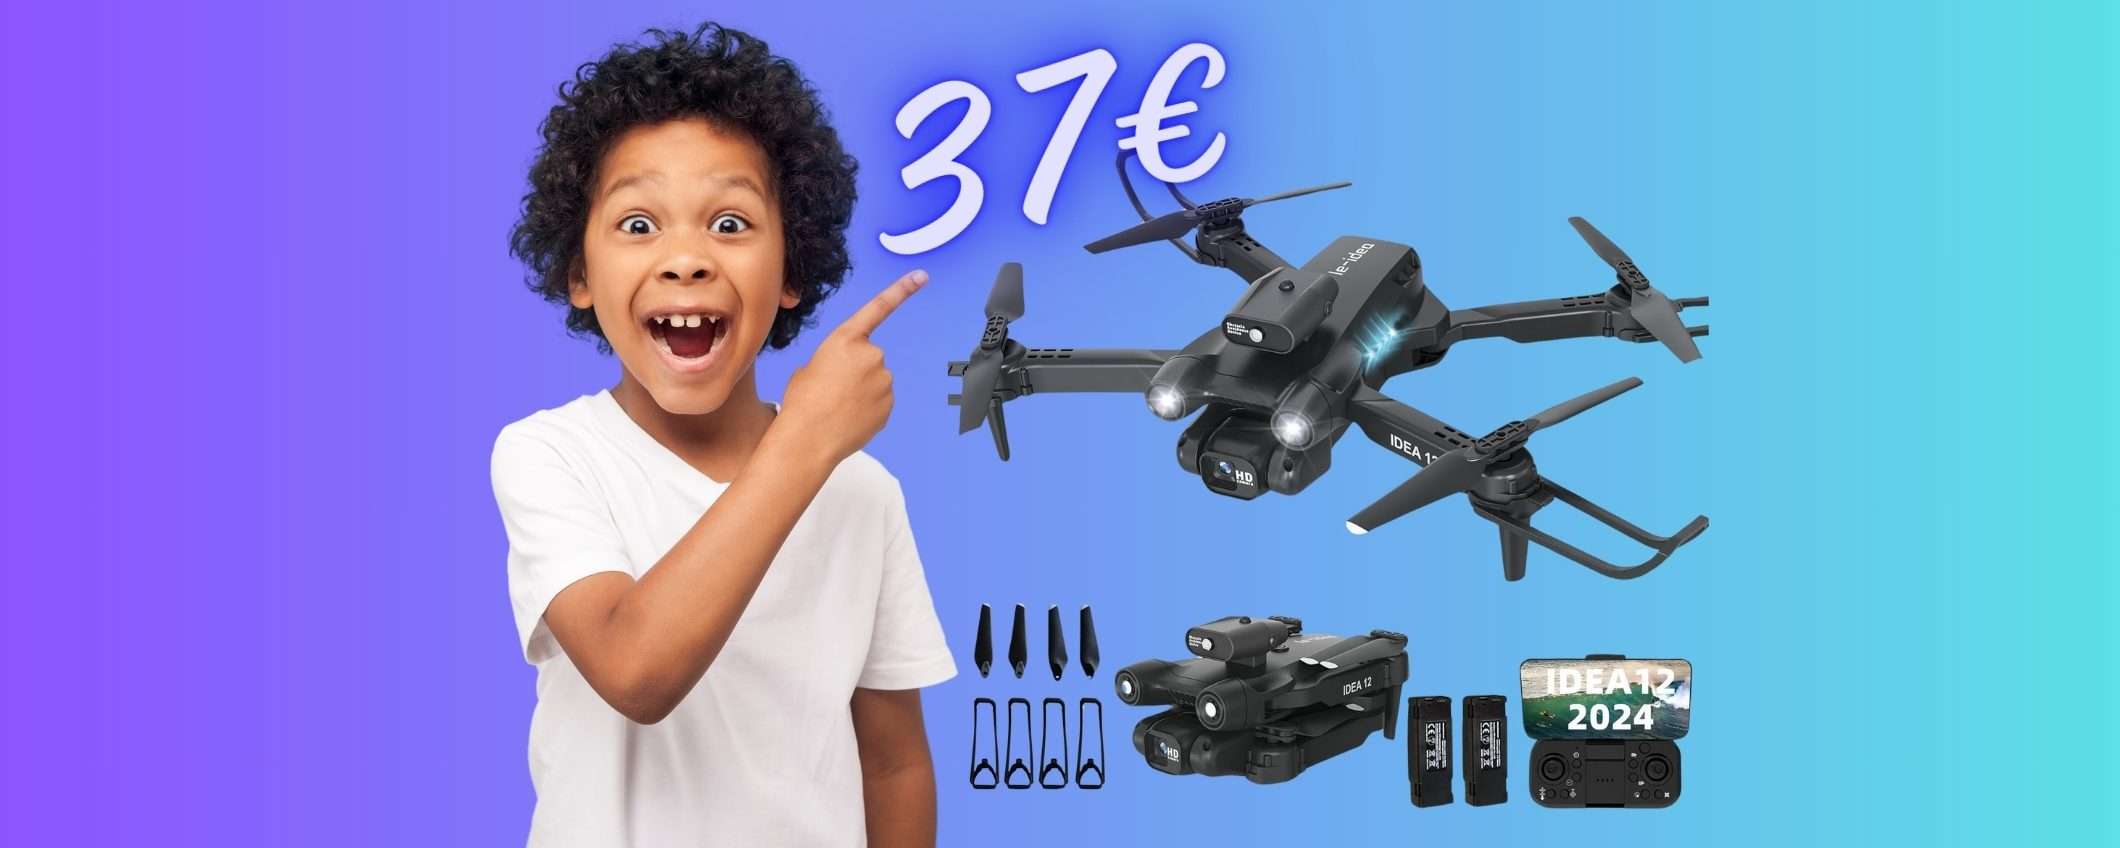 Drone con telecamera: il REGALO PERFETTO costa niente, solo 37€